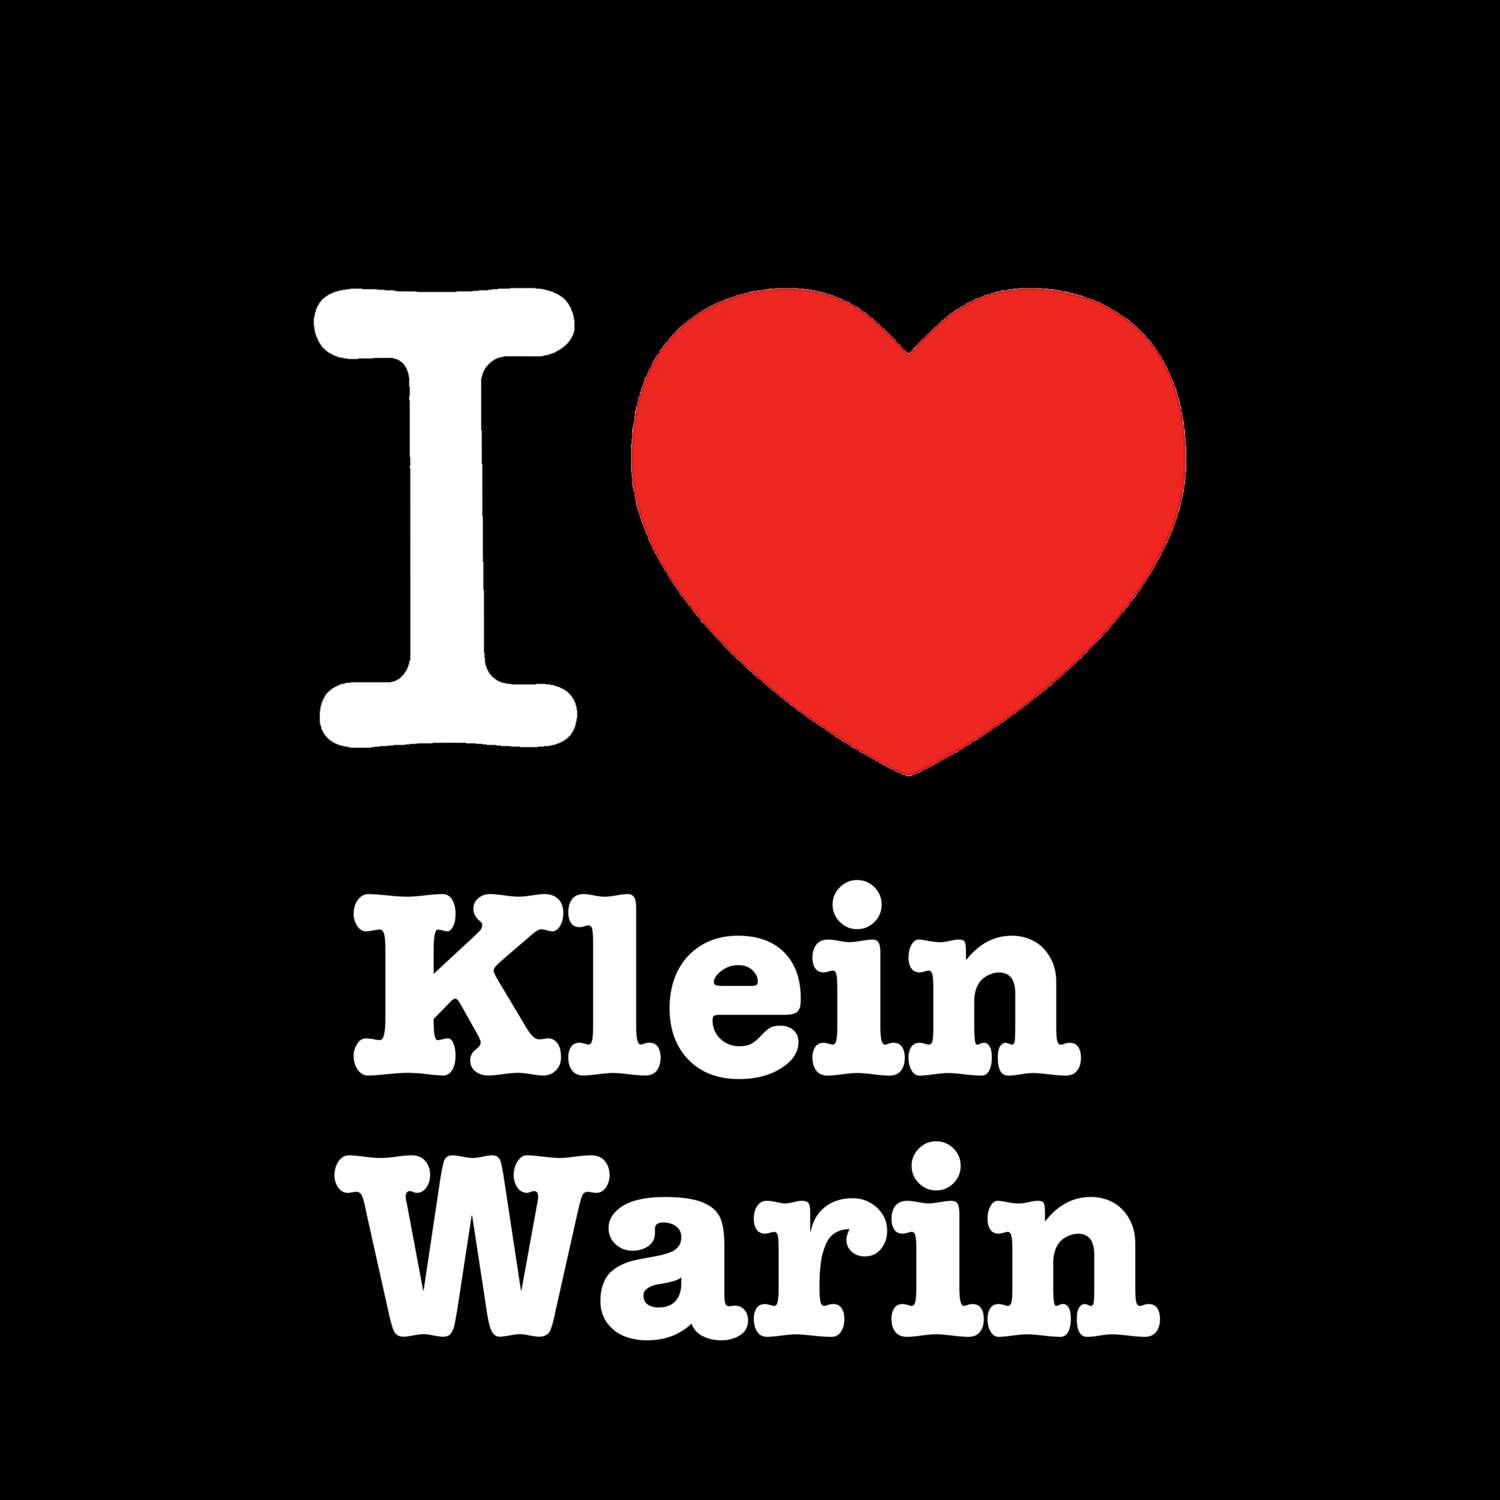 Klein Warin T-Shirt »I love«